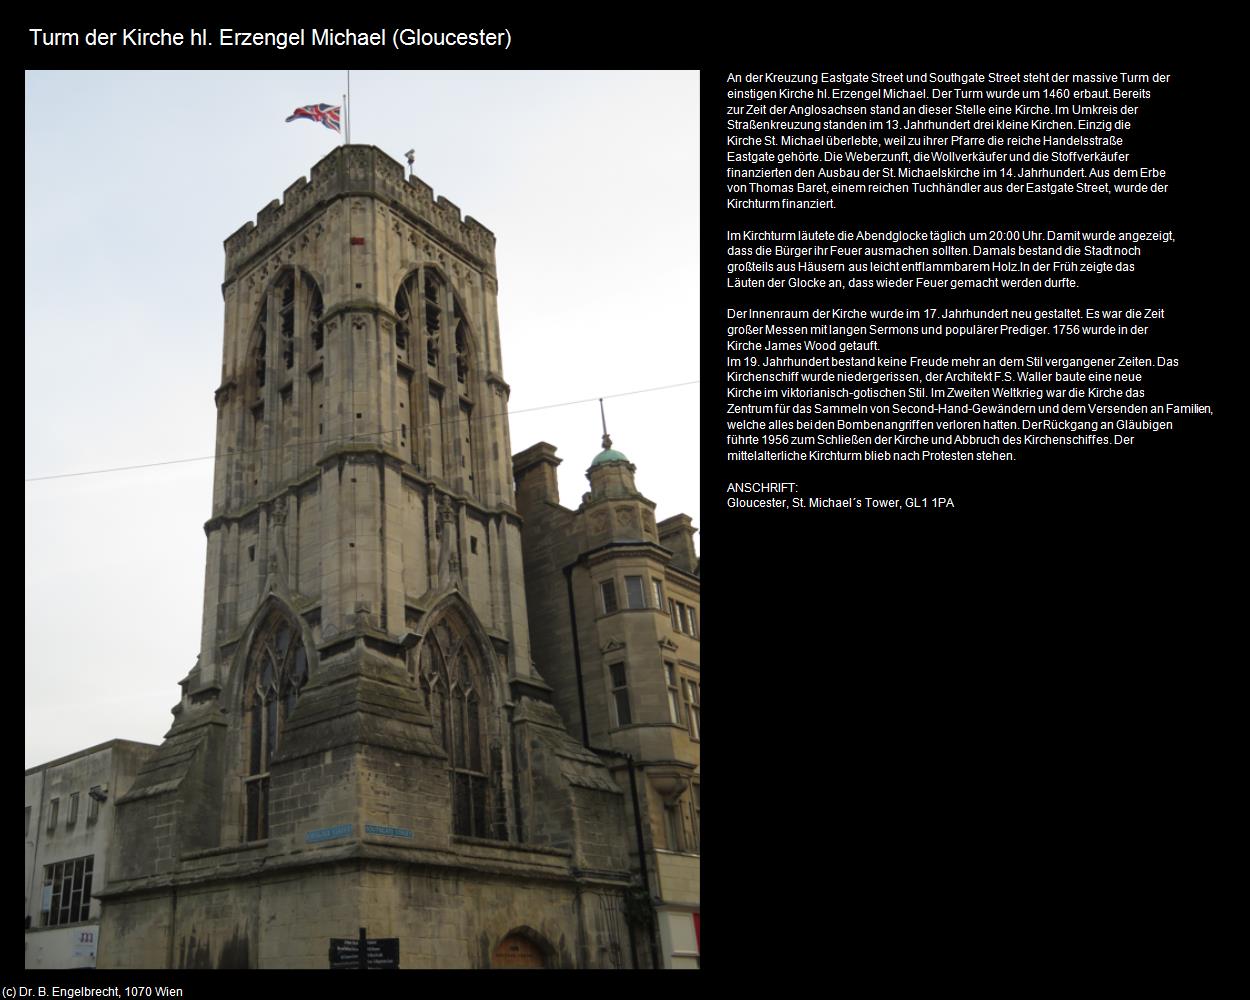 Turm der Kirche hl. Erzengel Michael (Gloucester, England) in Kulturatlas-ENGLAND und WALES